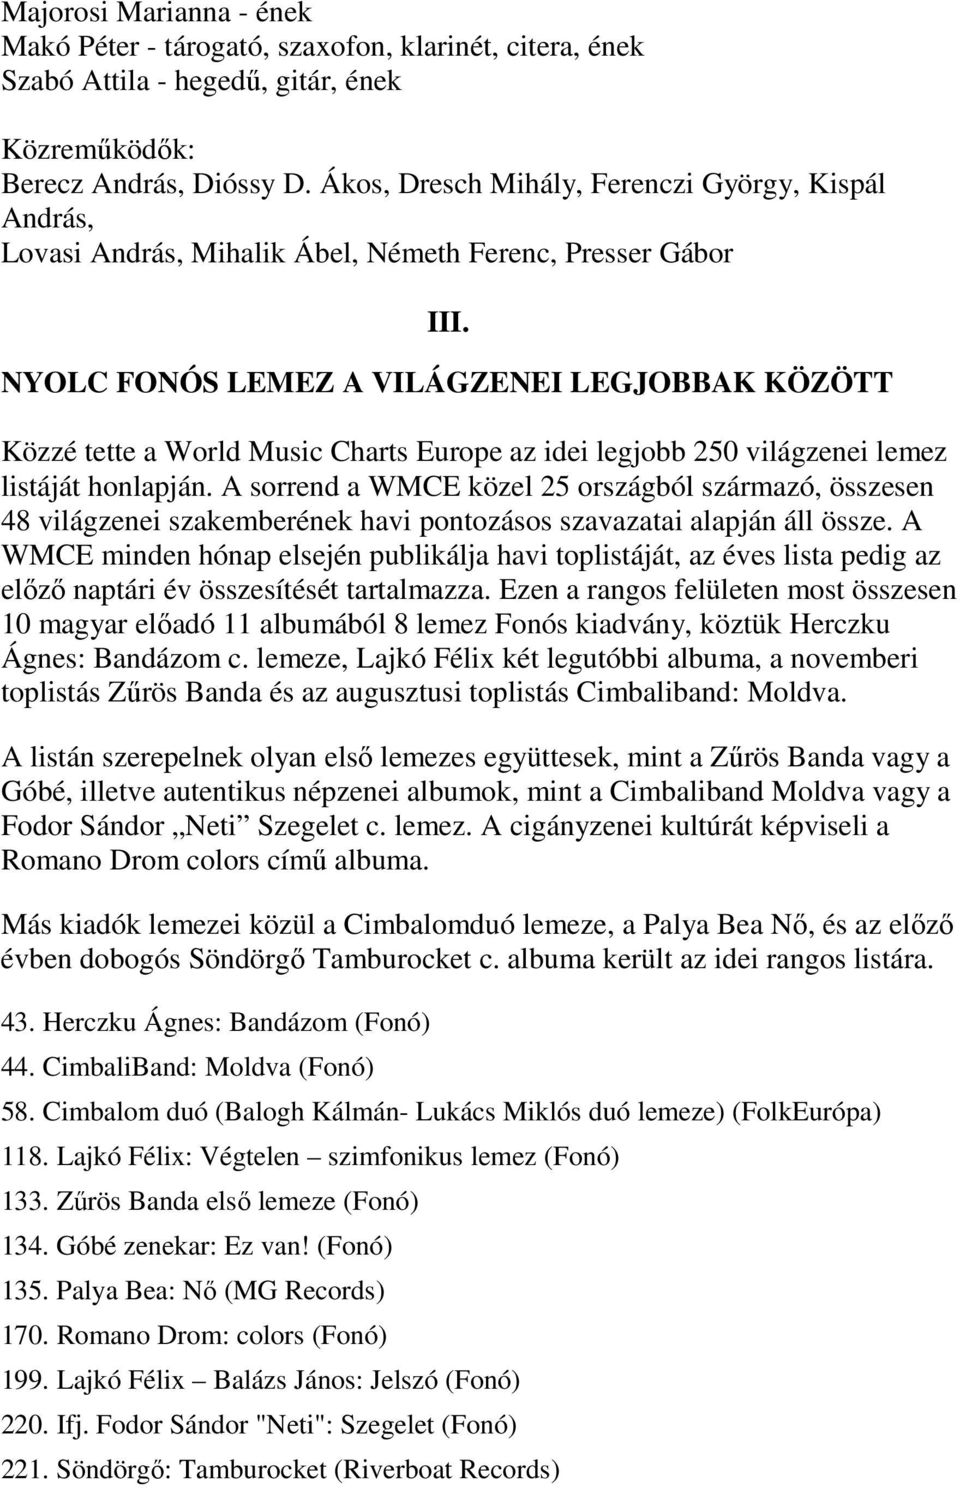 NYOLC FONÓS LEMEZ A VILÁGZENEI LEGJOBBAK KÖZÖTT Közzé tette a World Music Charts Europe az idei legjobb 250 világzenei lemez listáját honlapján.